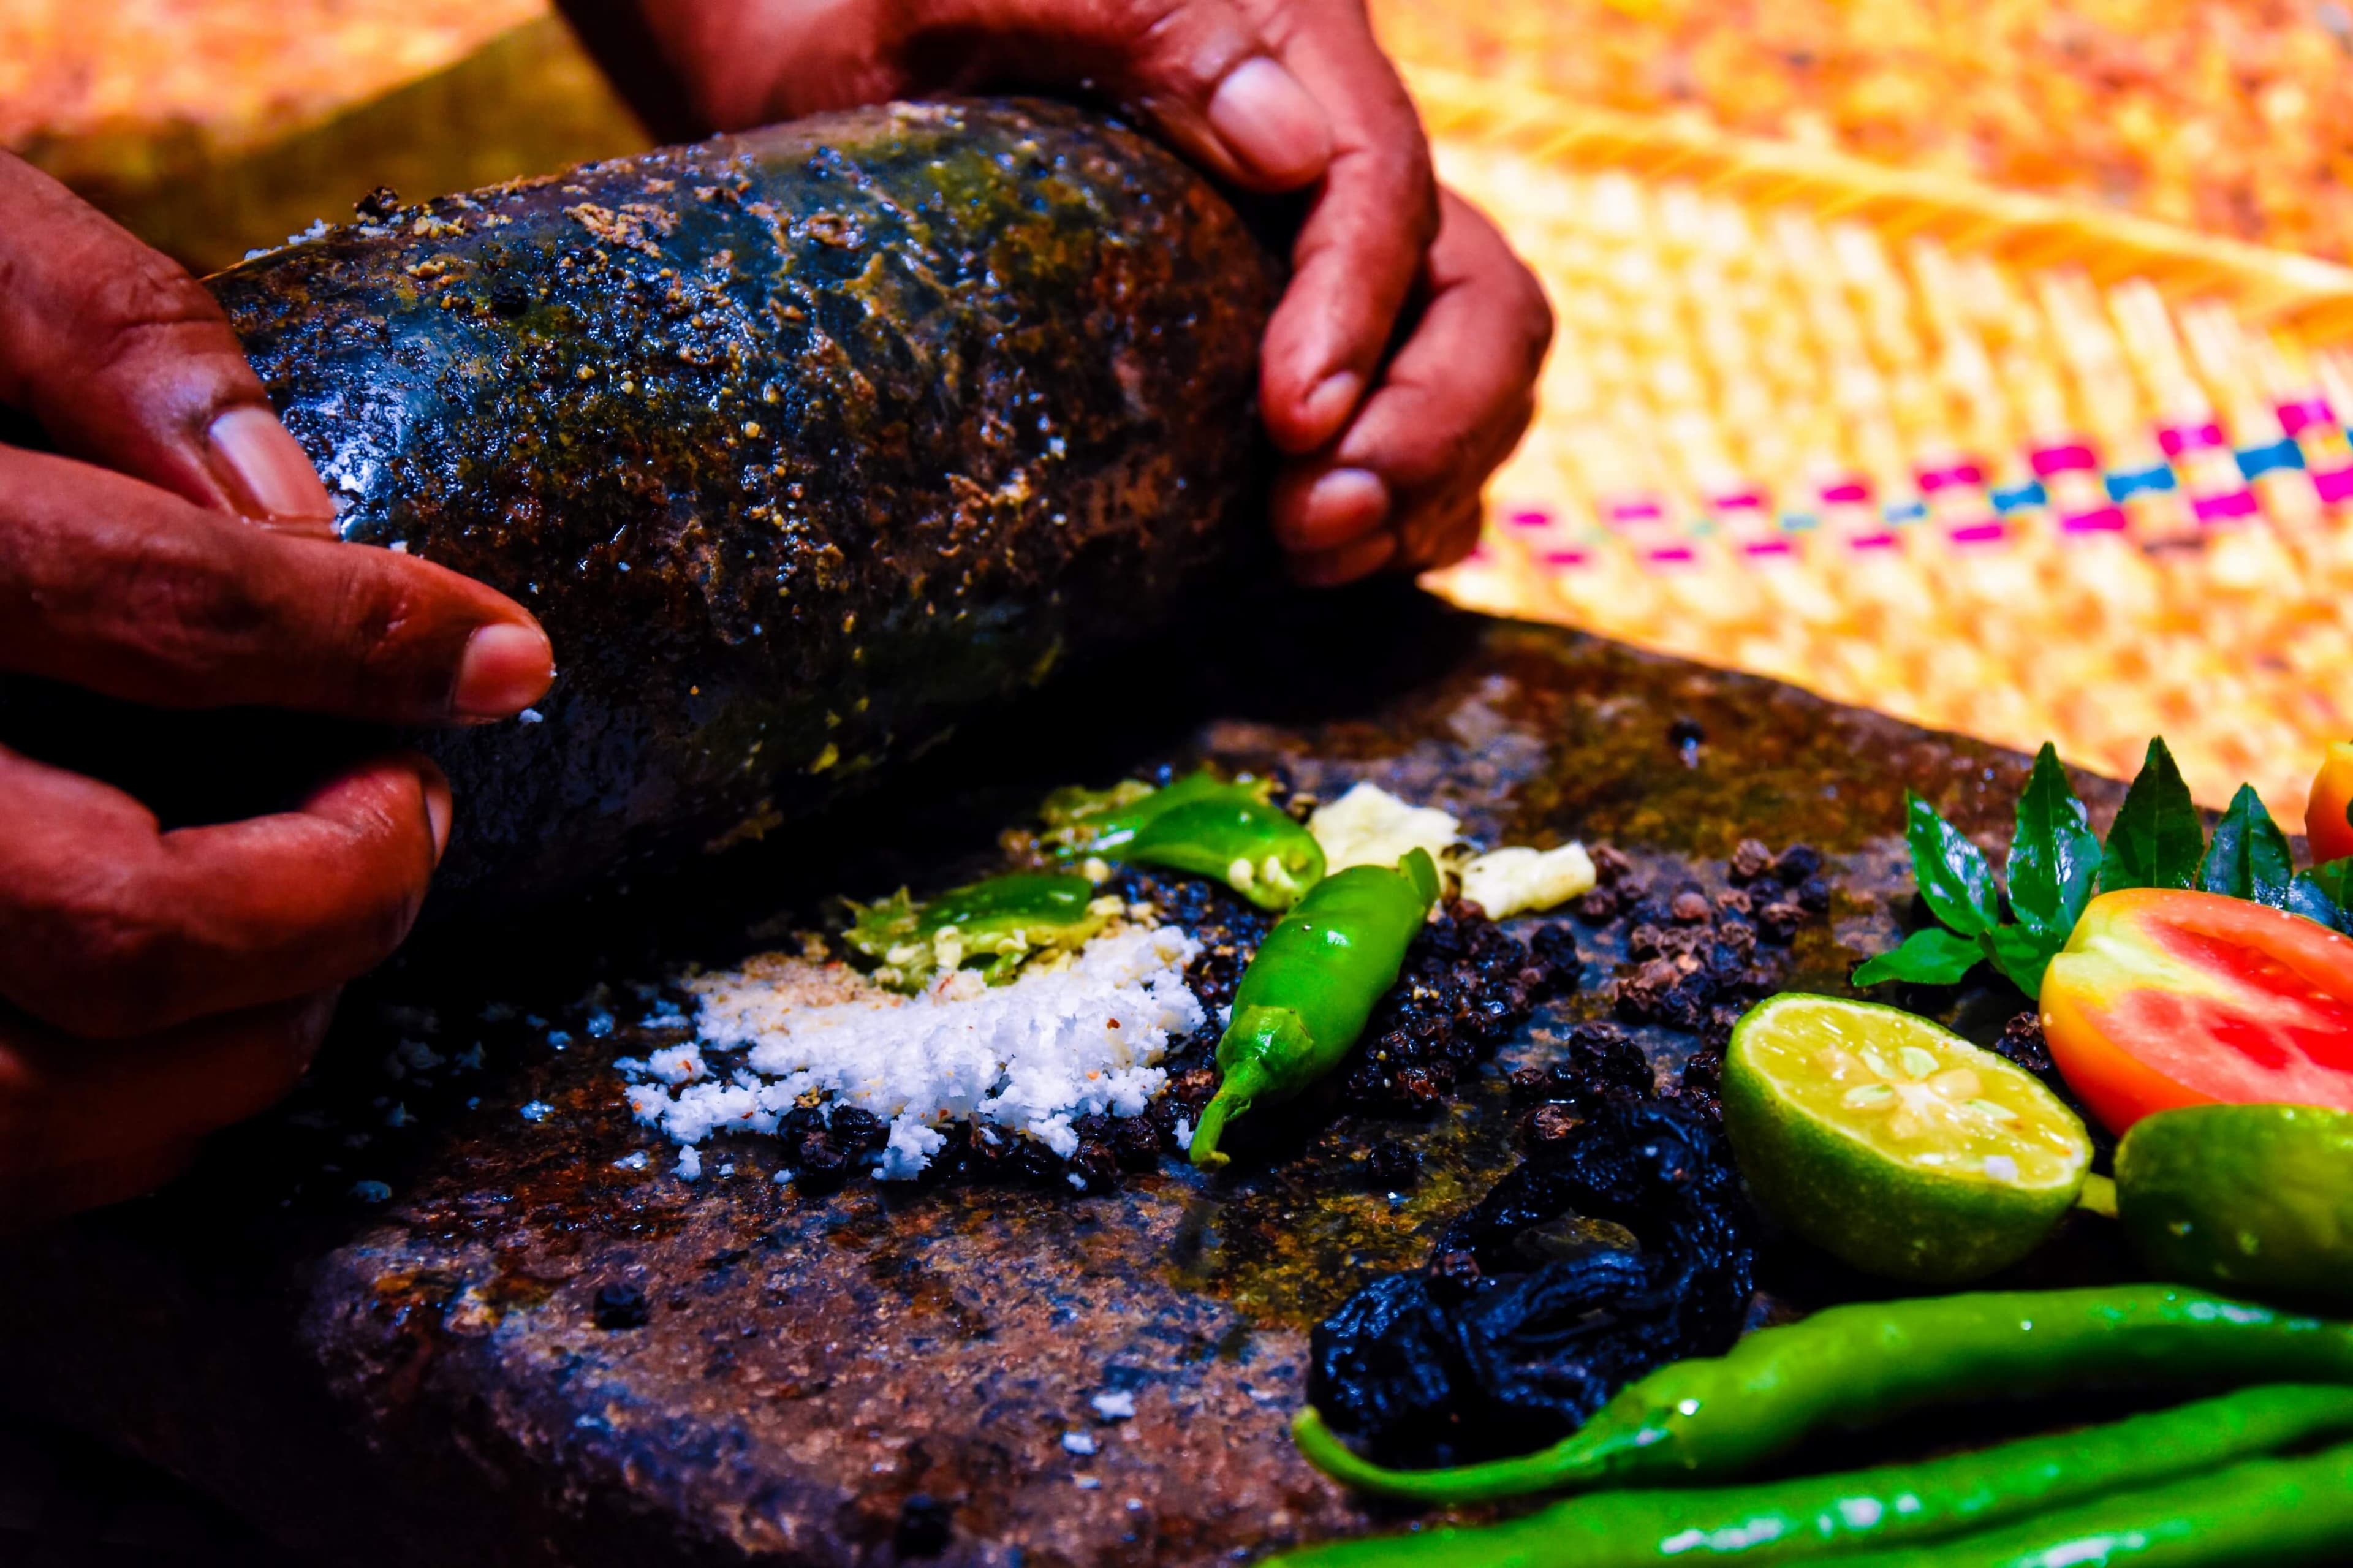 Фото приготовления вкусного «Кокосового пряного самбола» по-местному в Негомбо.